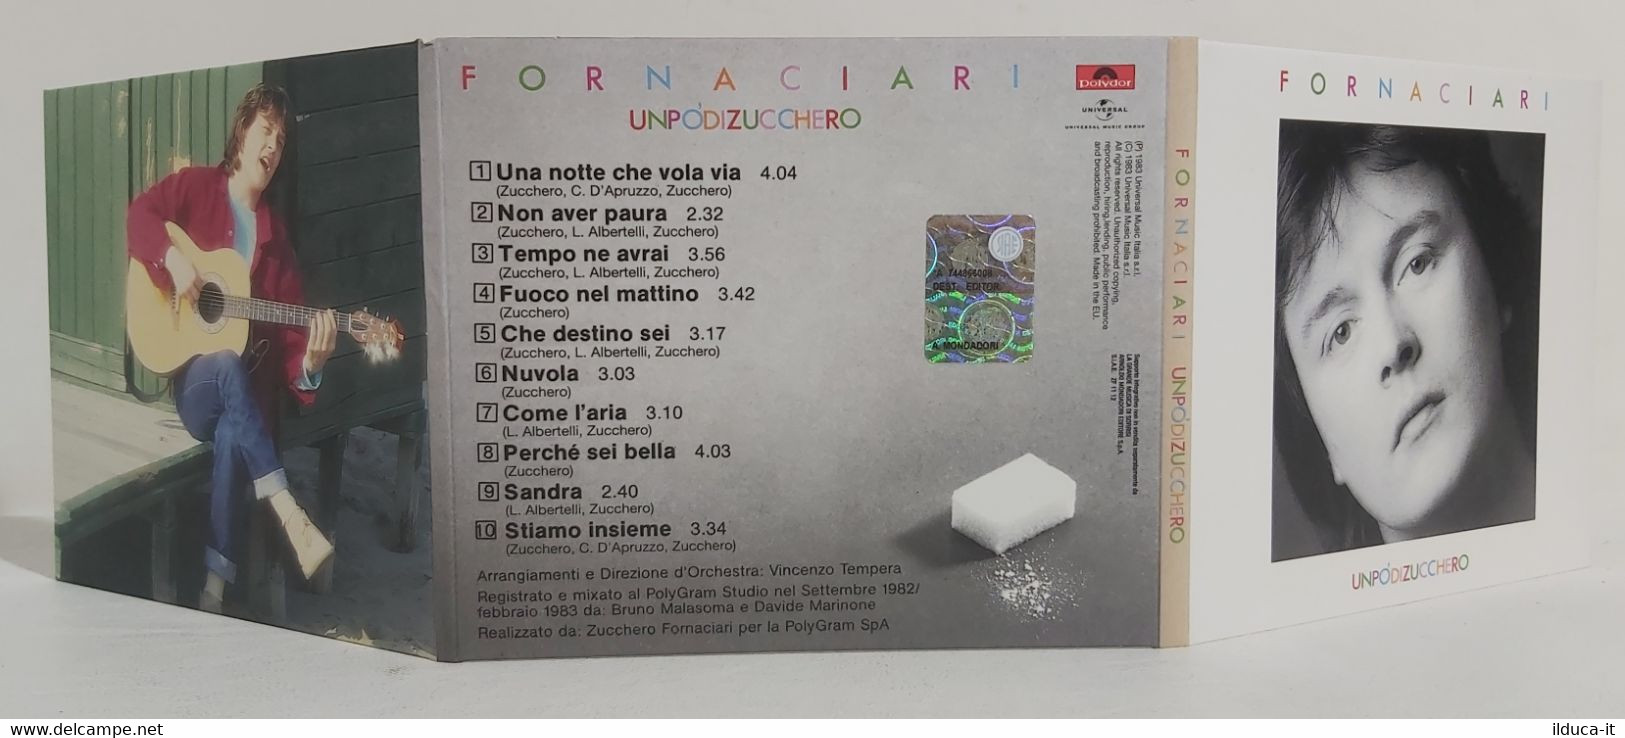 I106660 CD Digipak - Zucchero Sugar Fornaciari - Un Po' Di Zucchero - Sonstige - Italienische Musik